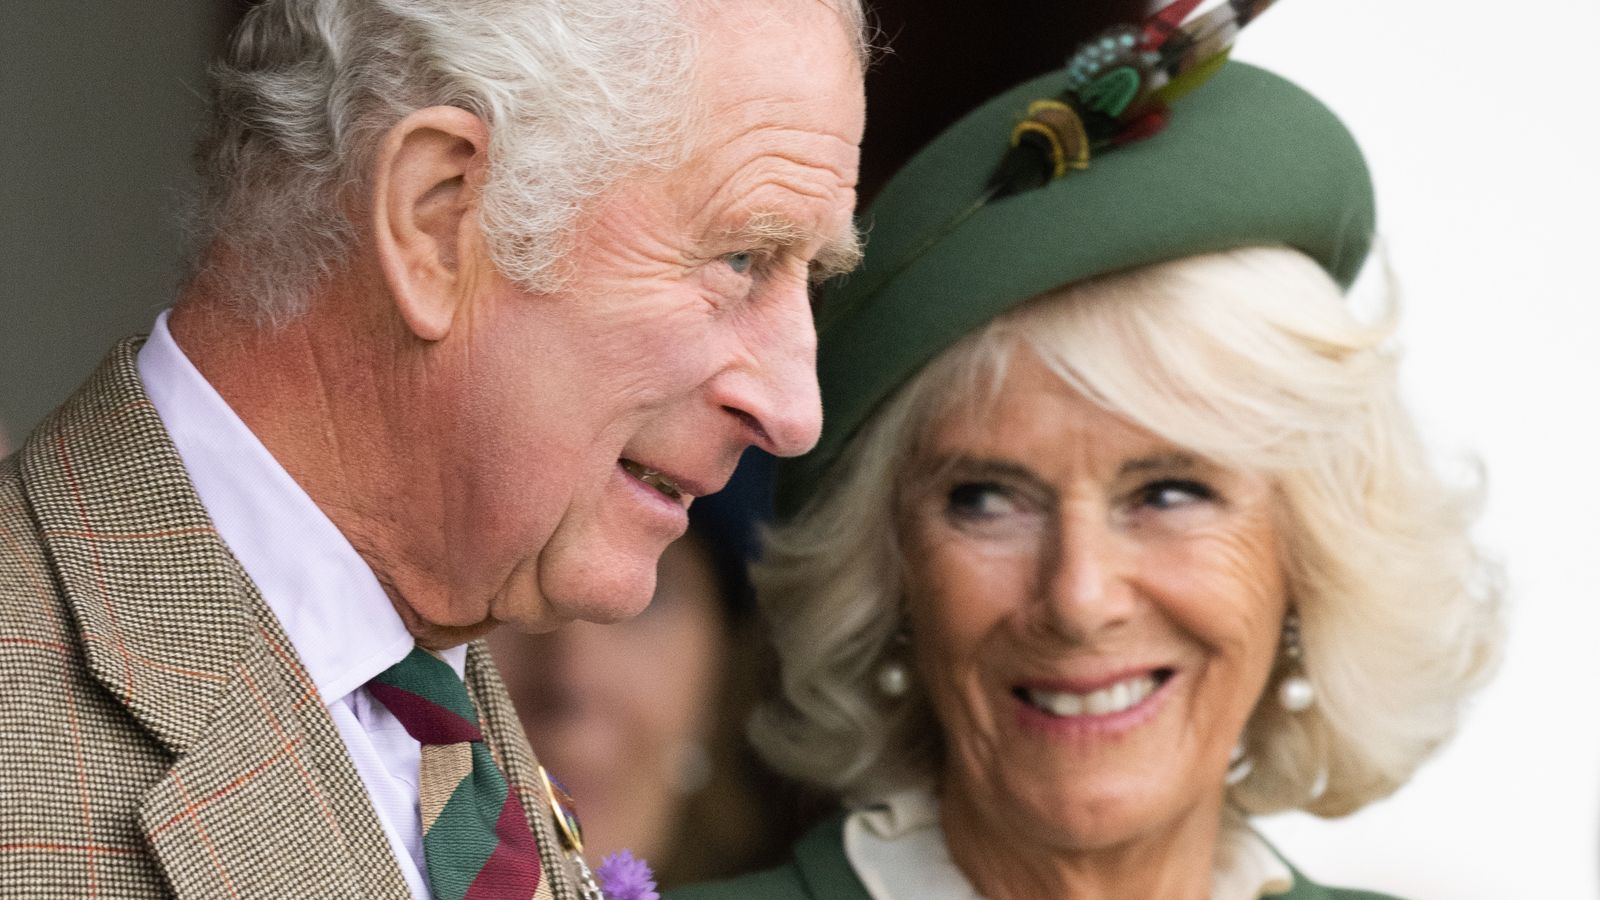 Première procession officielle pour marquer l’anniversaire du roi Charles l’année prochaine confirmée |  Nouvelles du Royaume-Uni